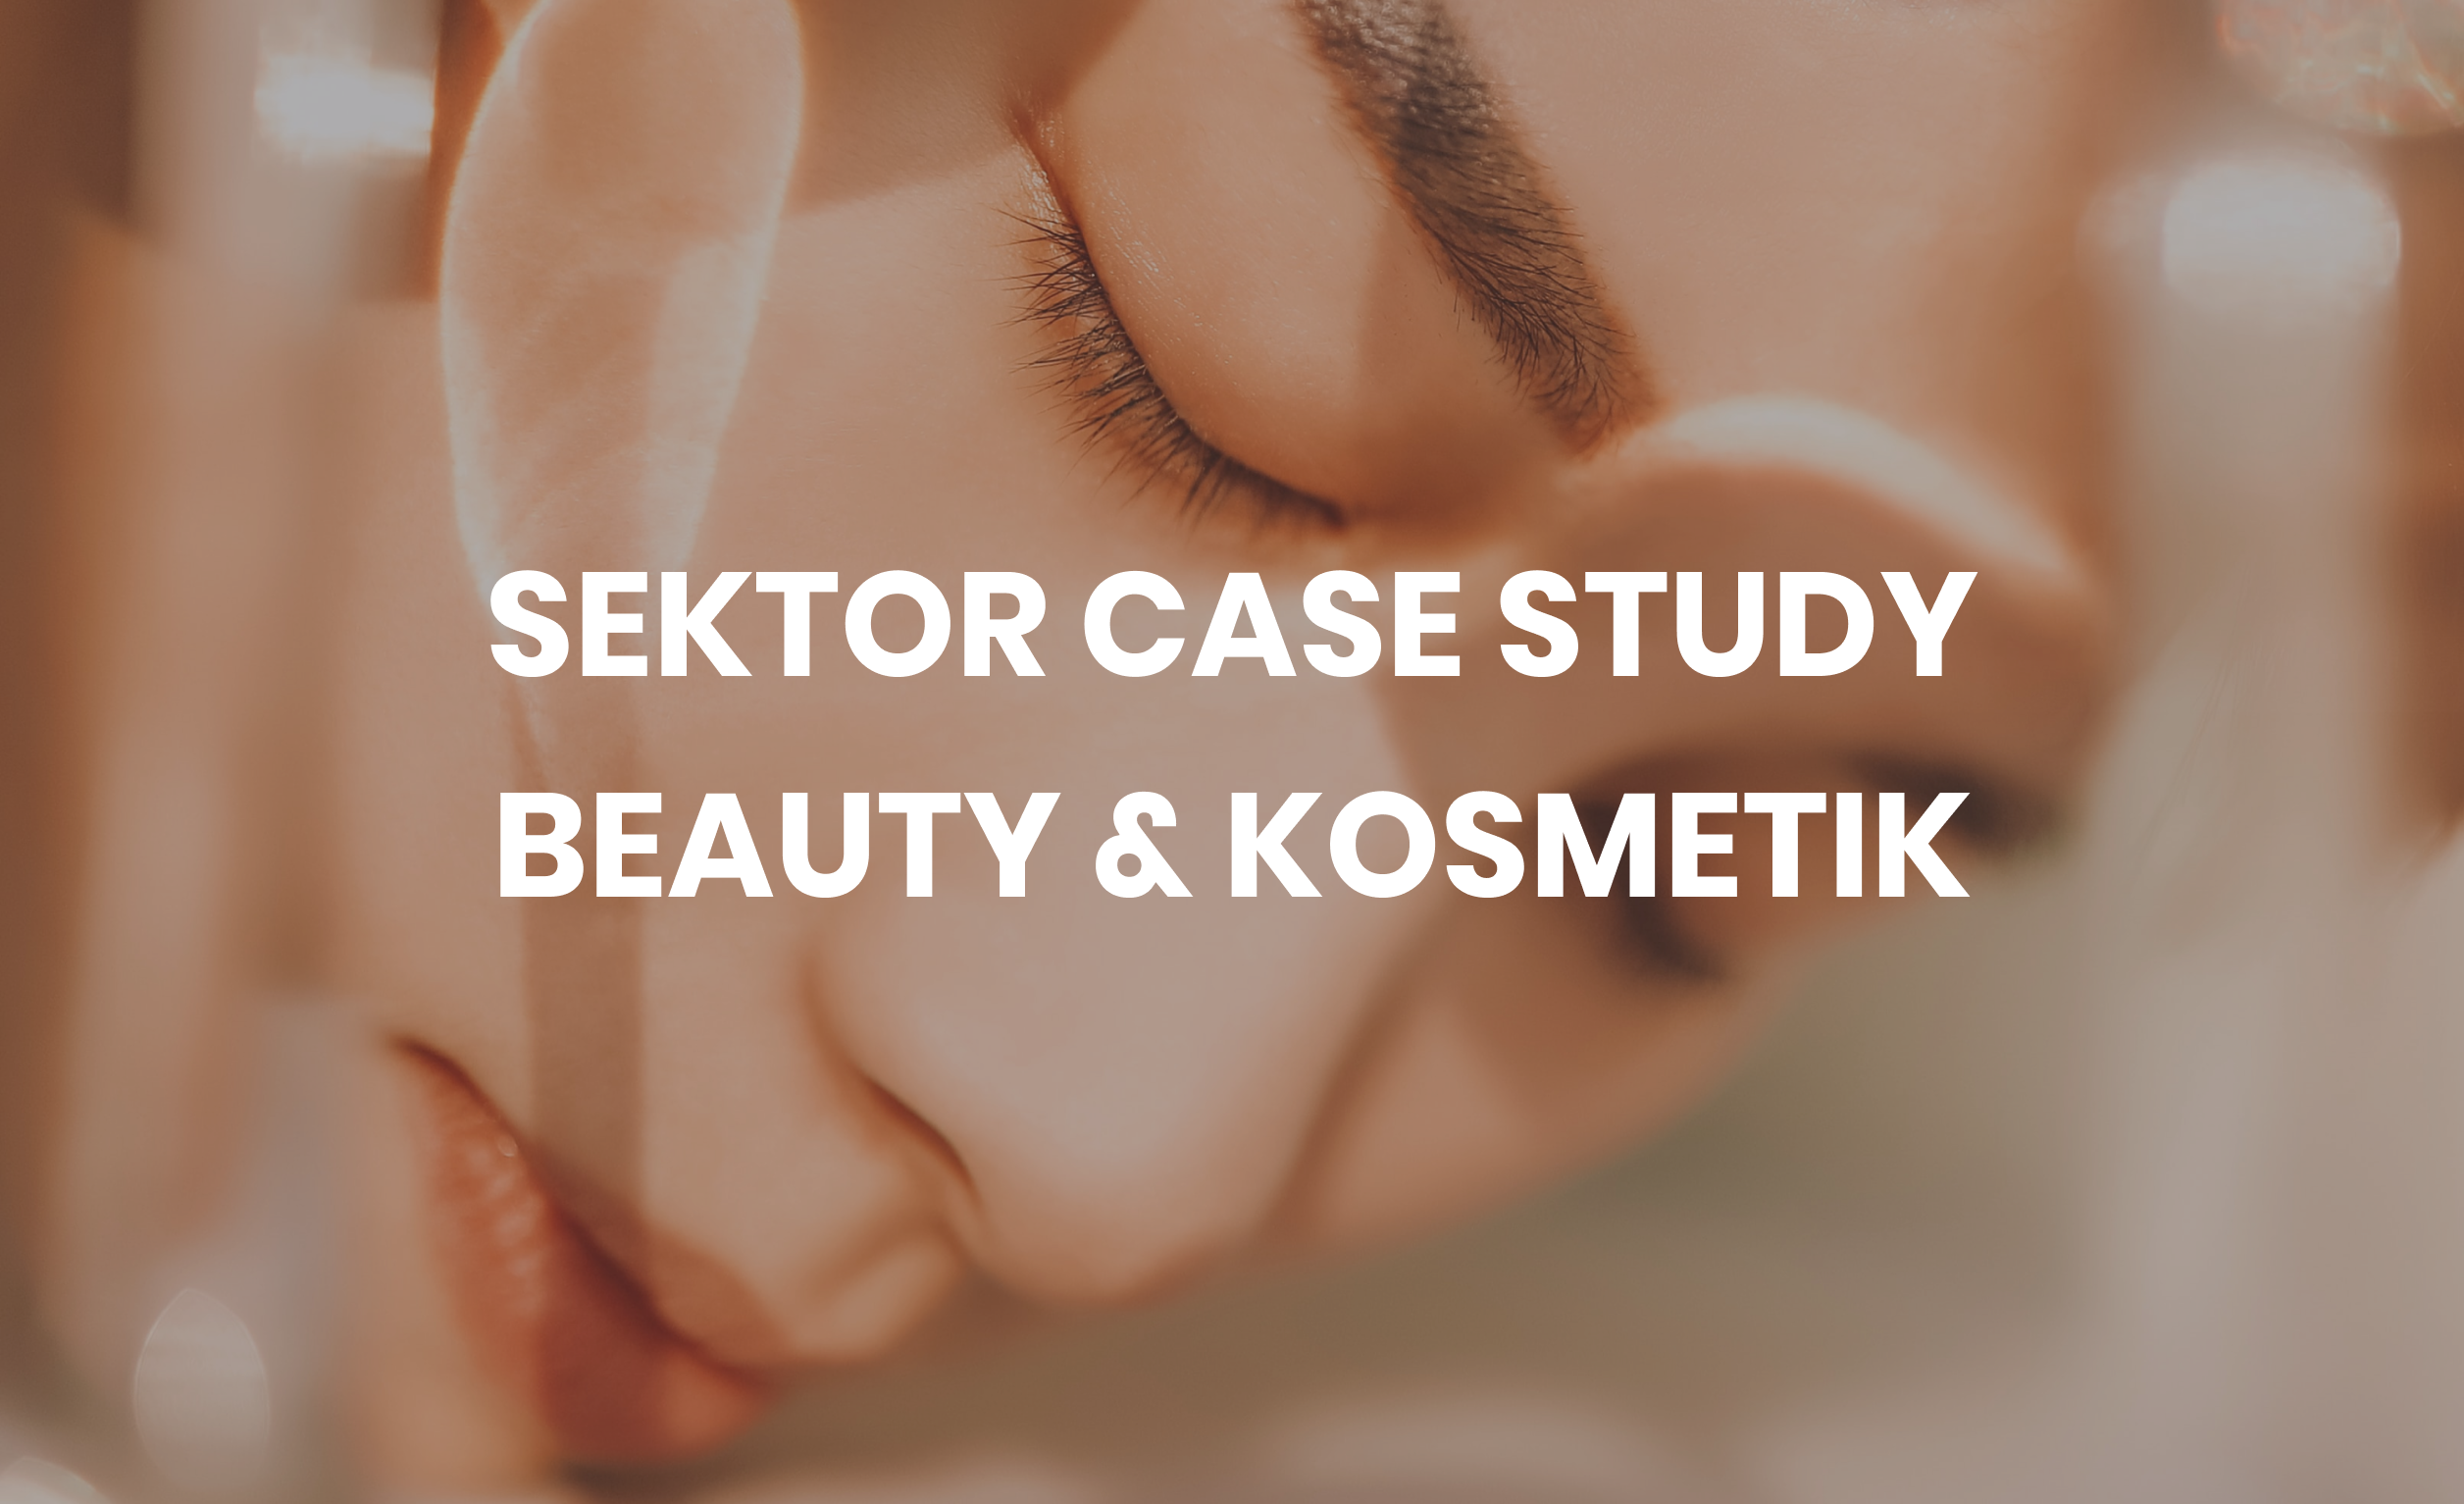 Sektor Case Study Beauty & Kosmetik